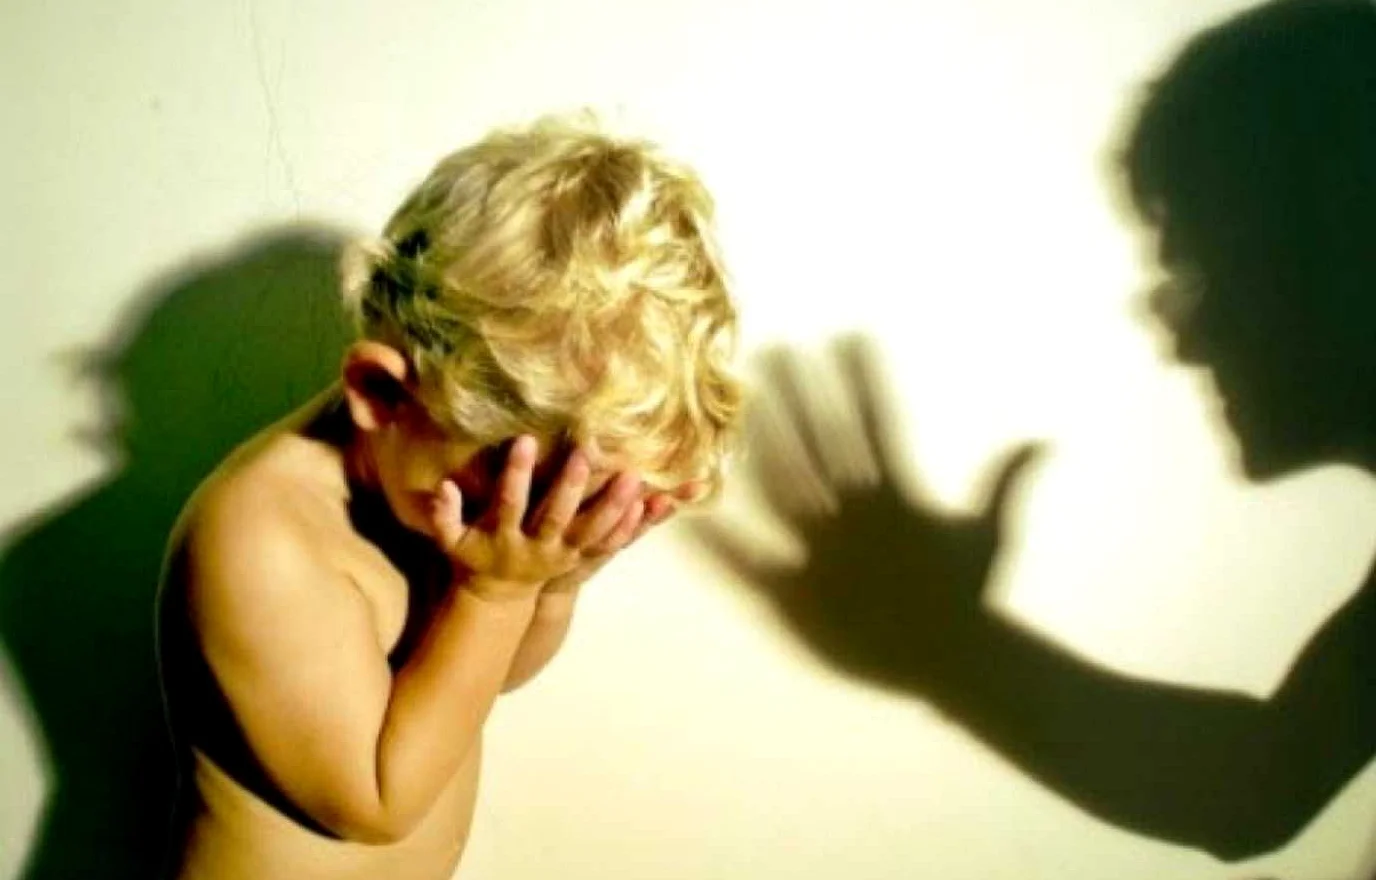 Семейное насилие и психическое здоровье: обзор проблемы и пути решения